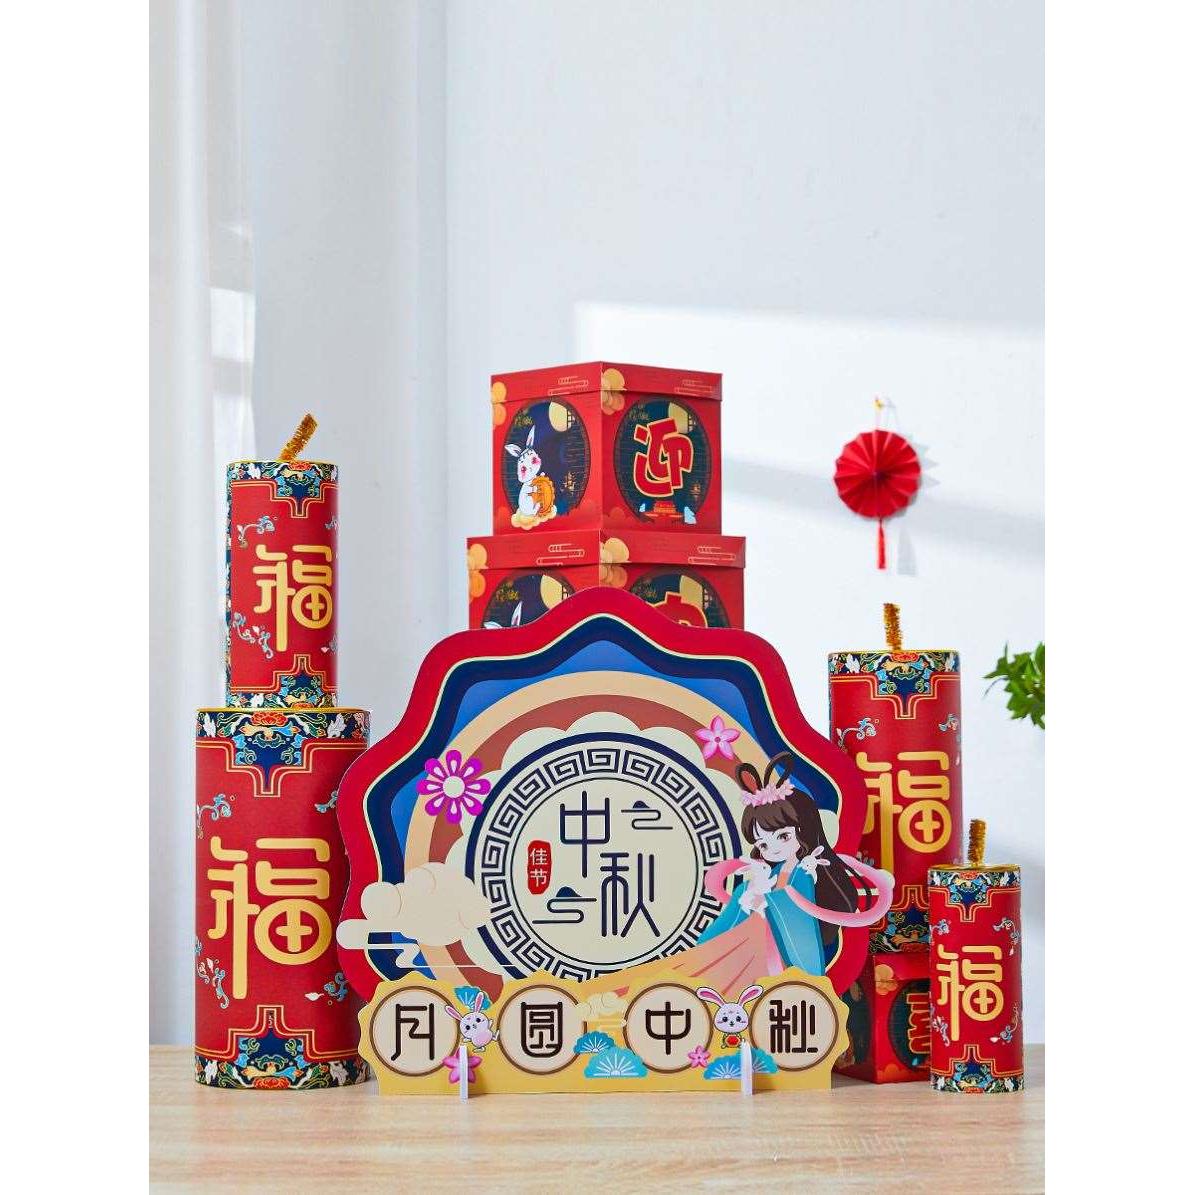 中秋节国庆节礼盒摆件装饰品创意堆头商场超市活动桌面场景布置